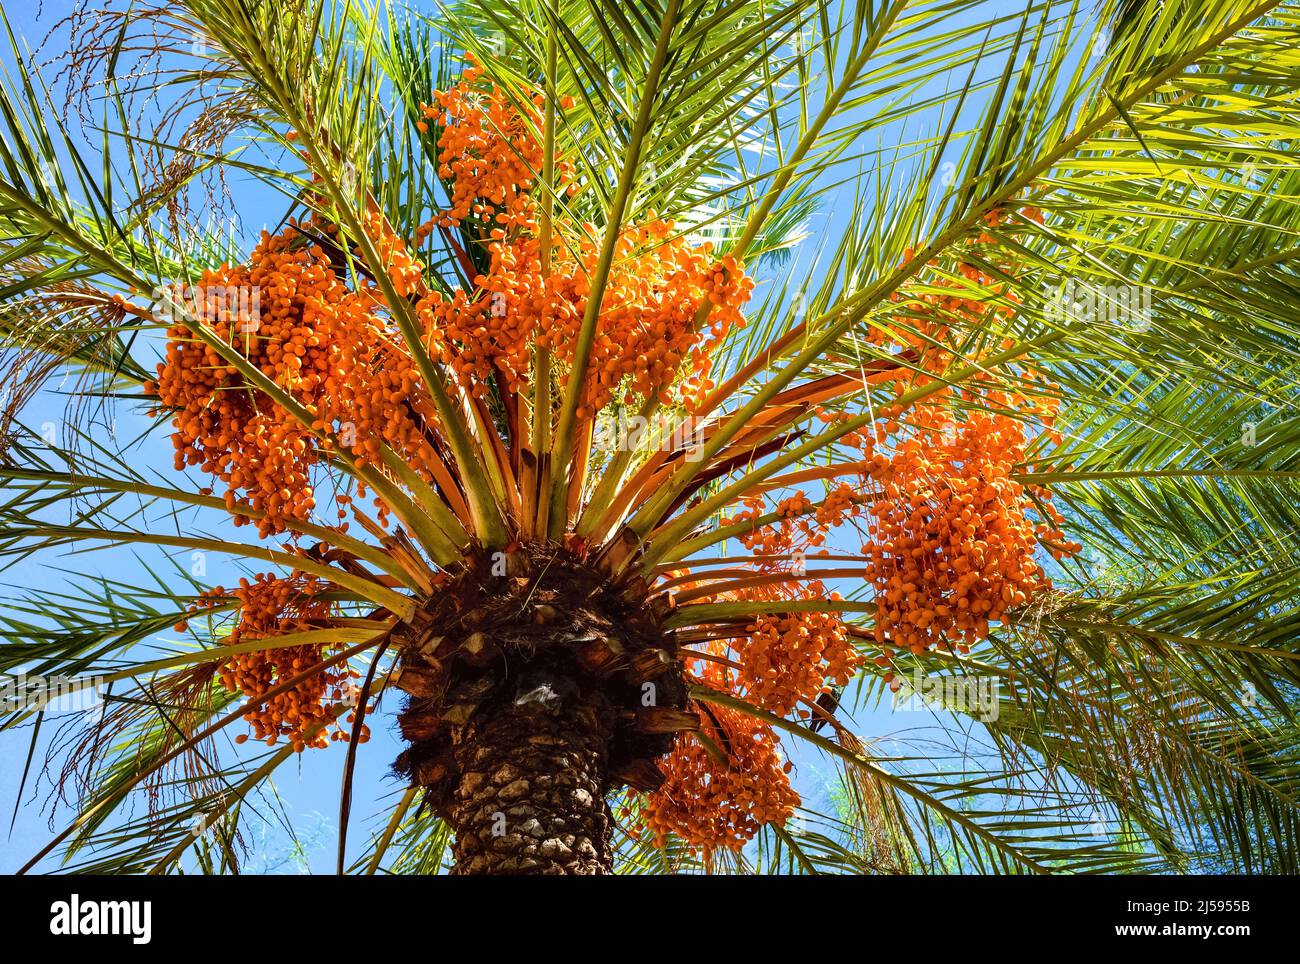 Un albero di palma di data rigoglioso e sano pieno di grappoli di data arancione che forniscono ombra in una giornata calda e soleggiata. Foto Stock